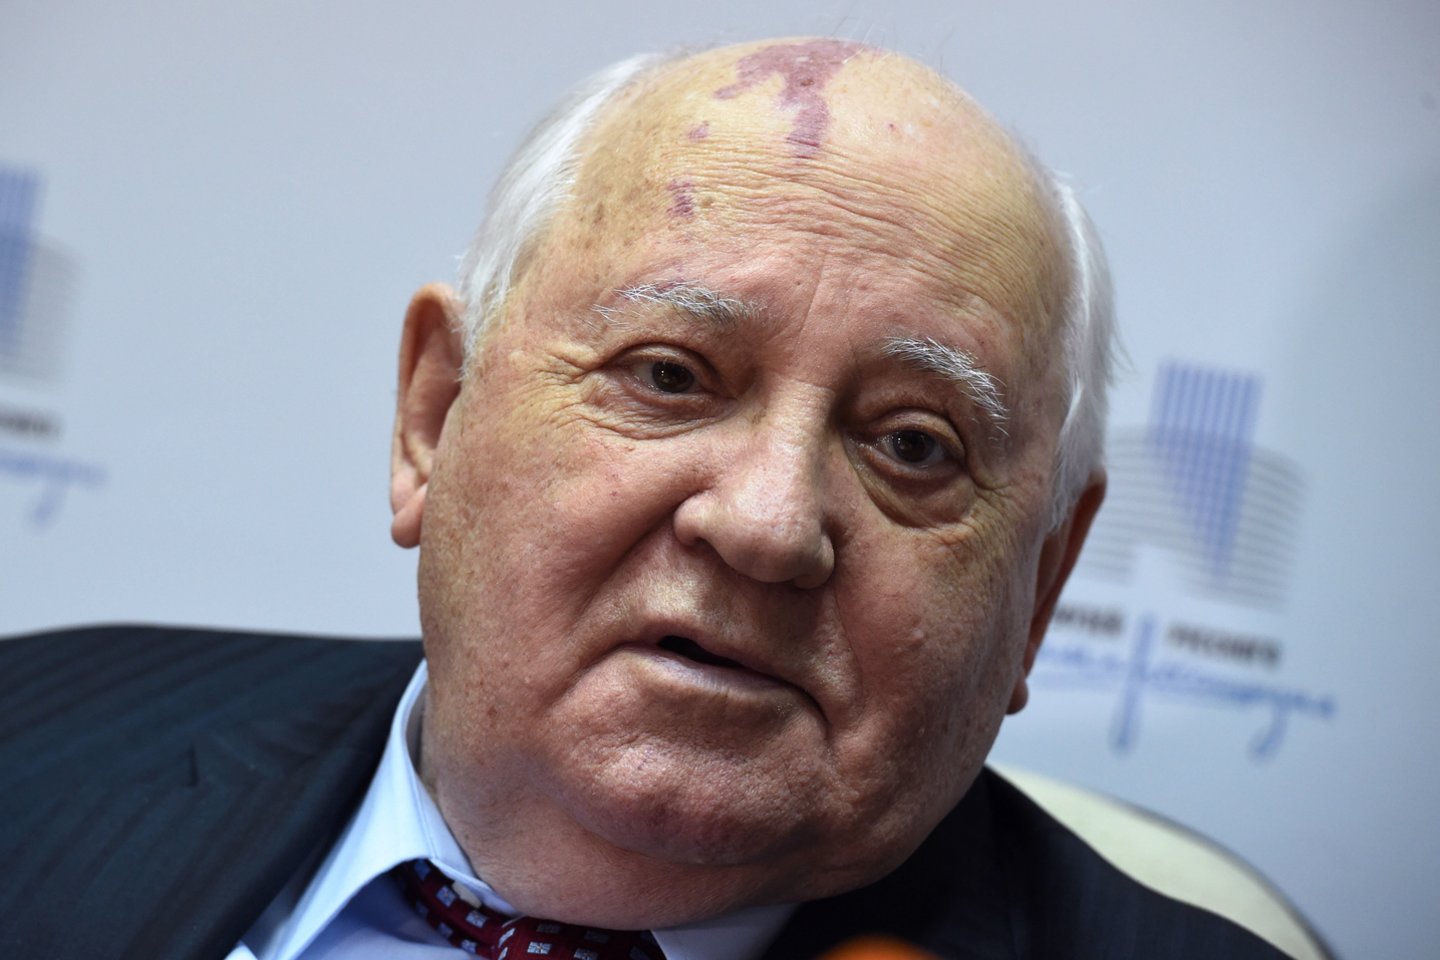  Buvęs Sovietų sąjungos lyderis Michailas Gorbačiovas paguldytas į ligoninę.<br> AFP/„Scanpix" nuotr.